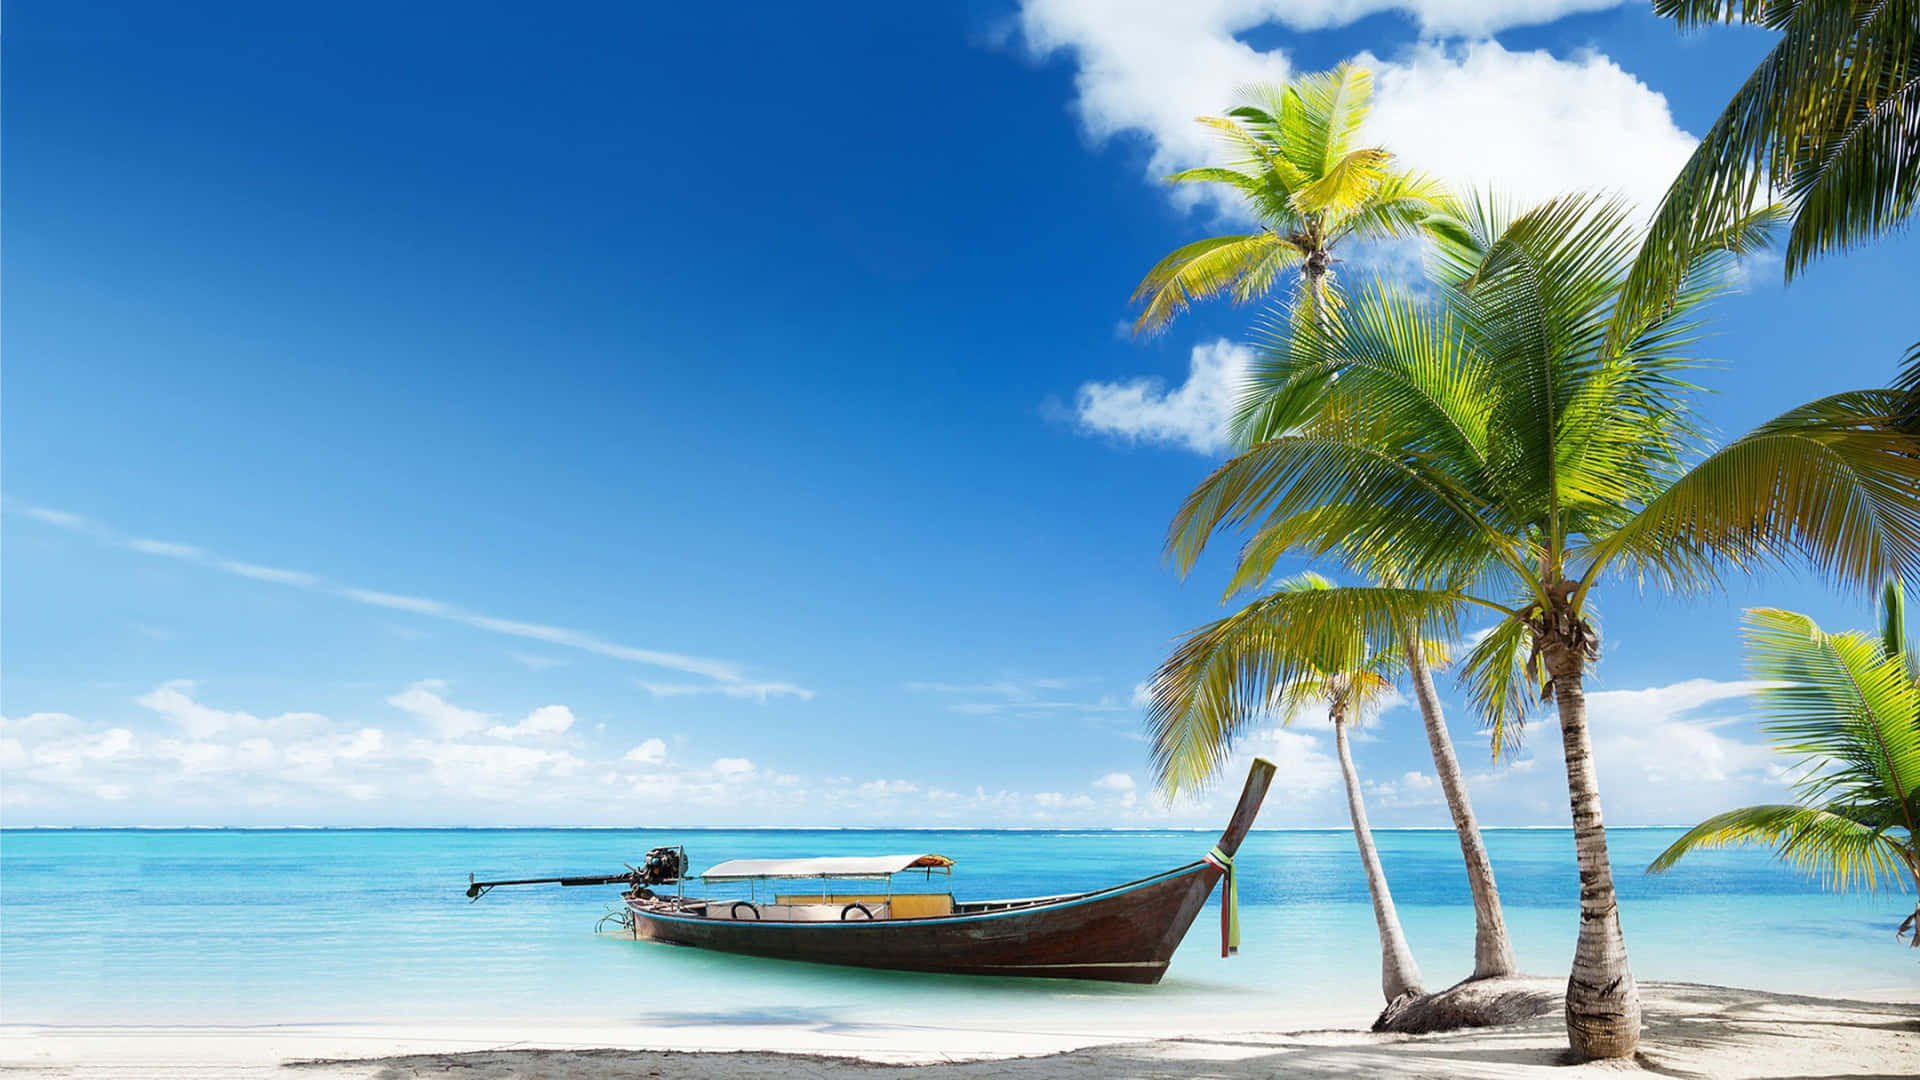 Relájateen Una Tranquila Playa Del Caribe. Fondo de pantalla